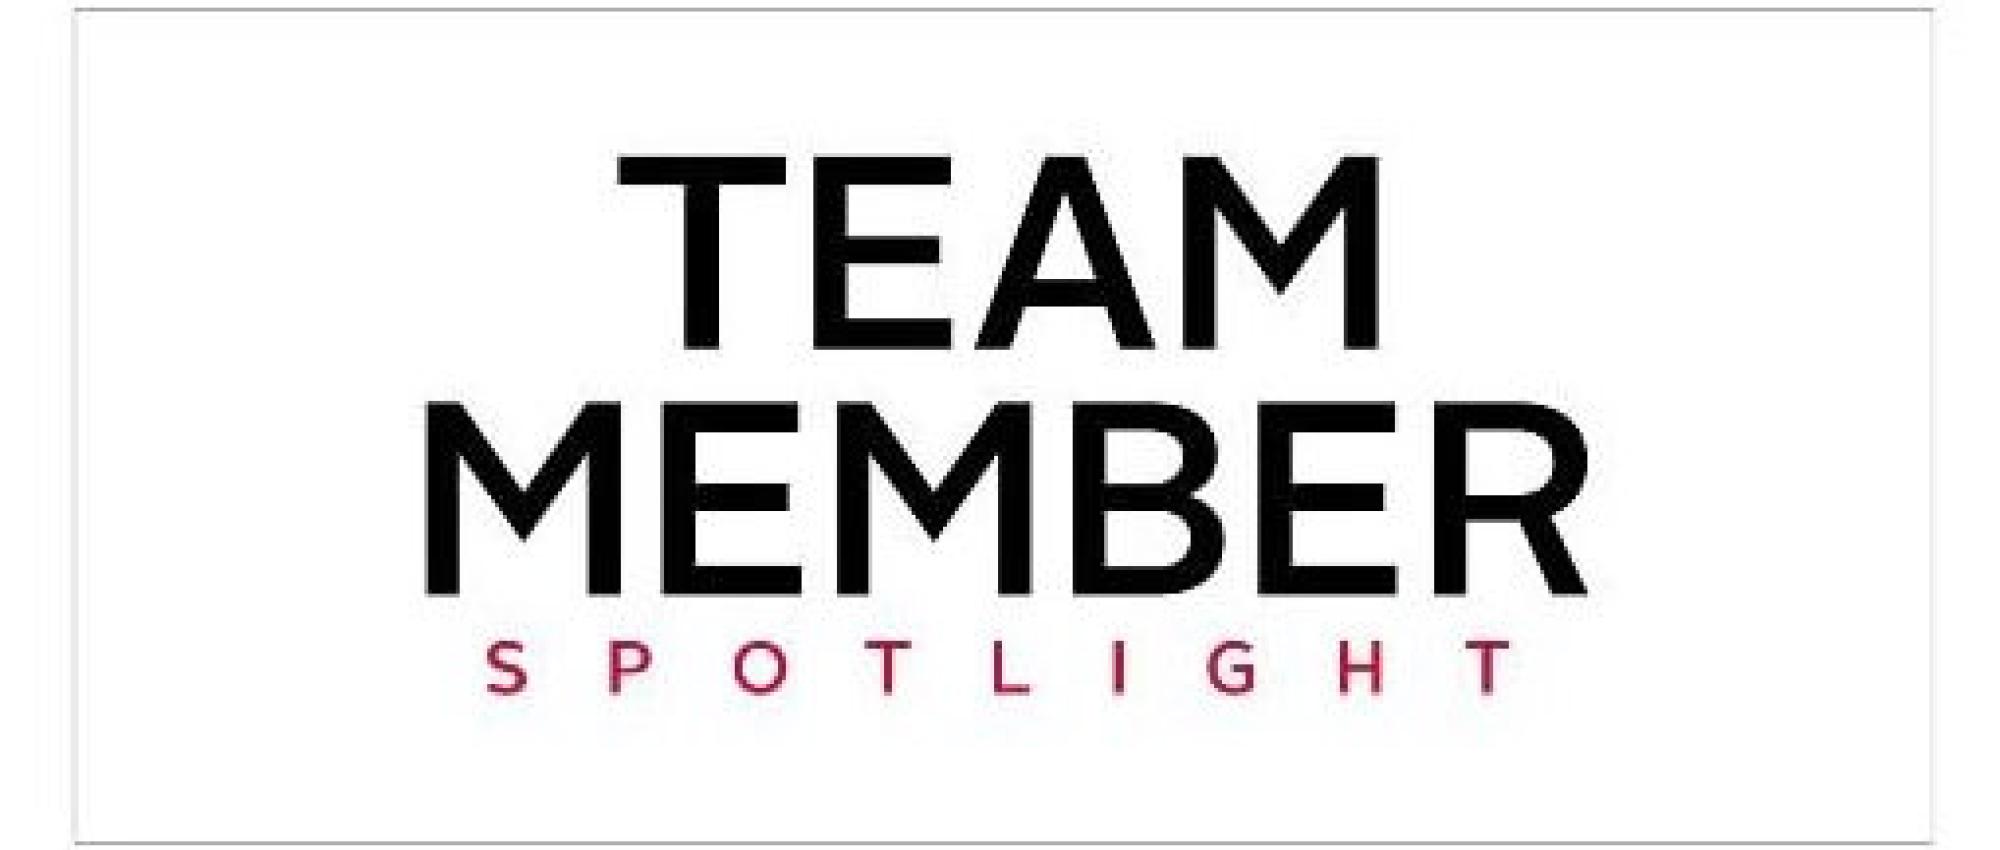 Team Member Spotlight